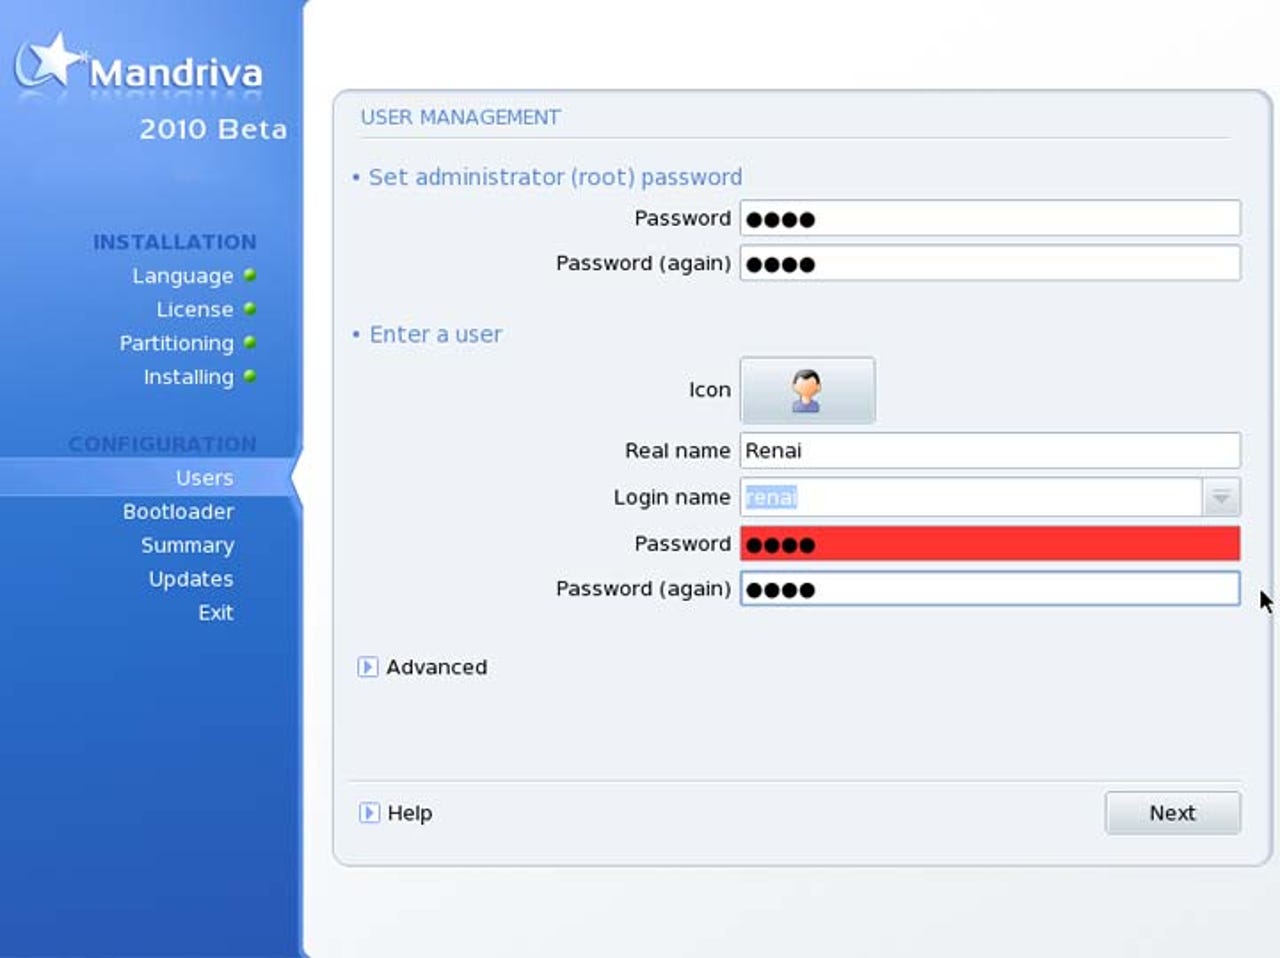 mandriva-2010-beta-screenshots11.jpg